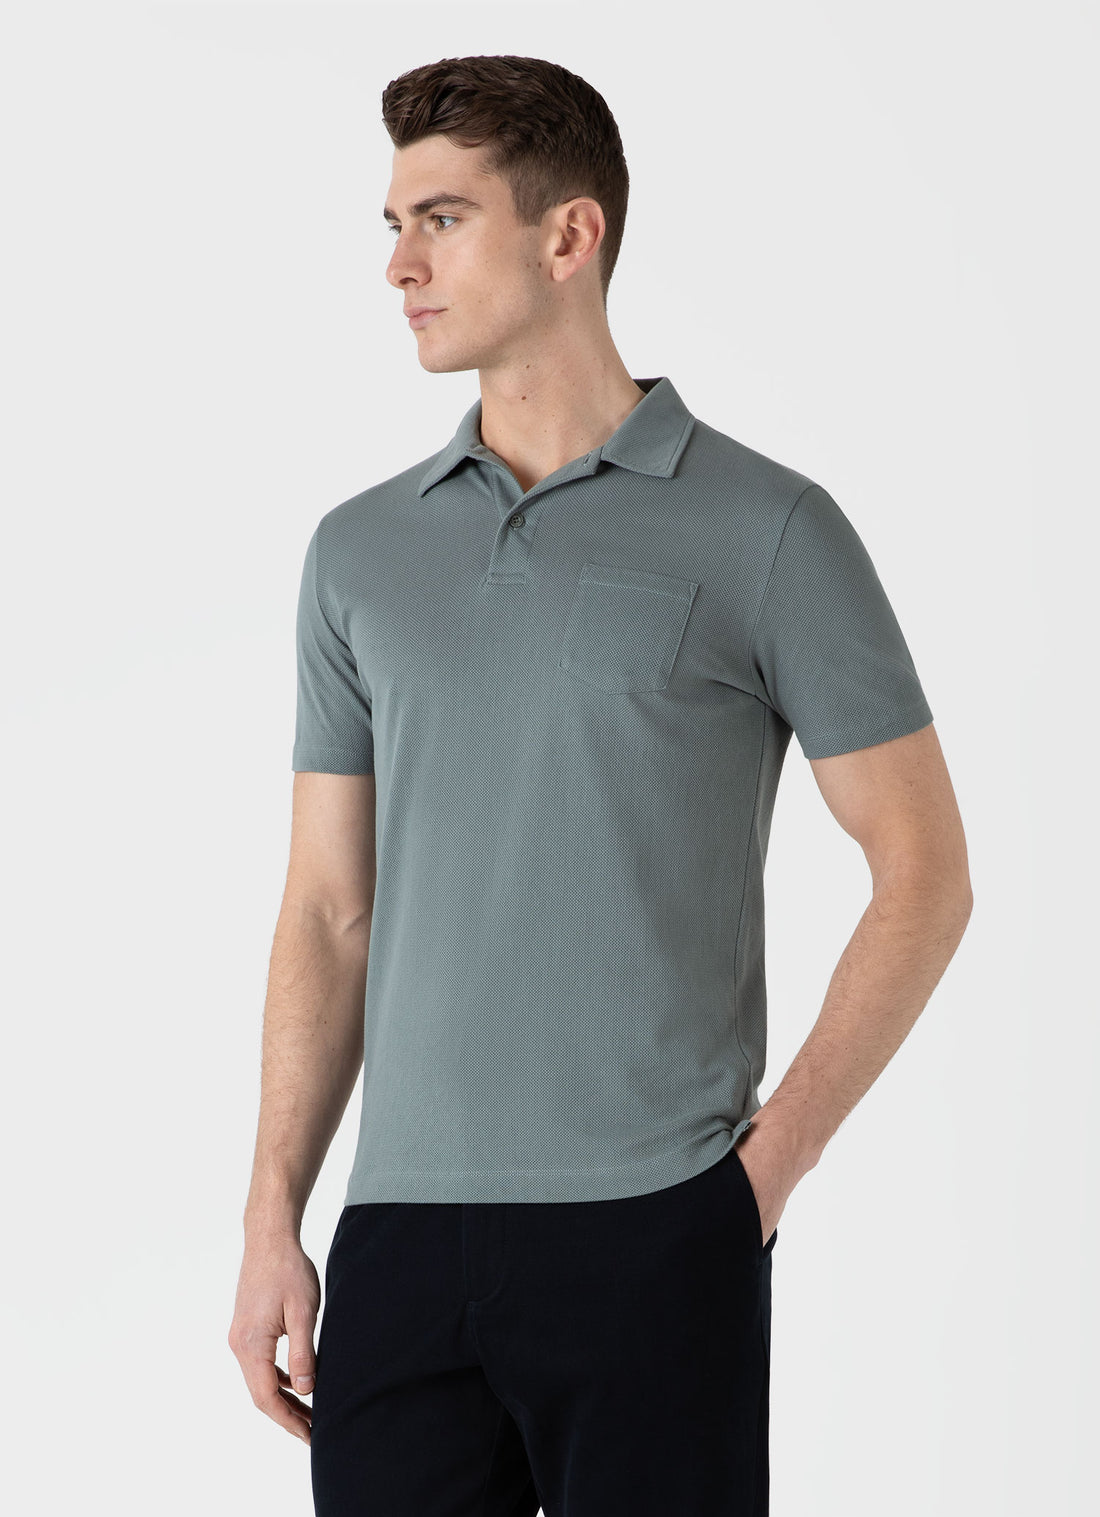 Men's Riviera Polo Shirt in Smoke Green